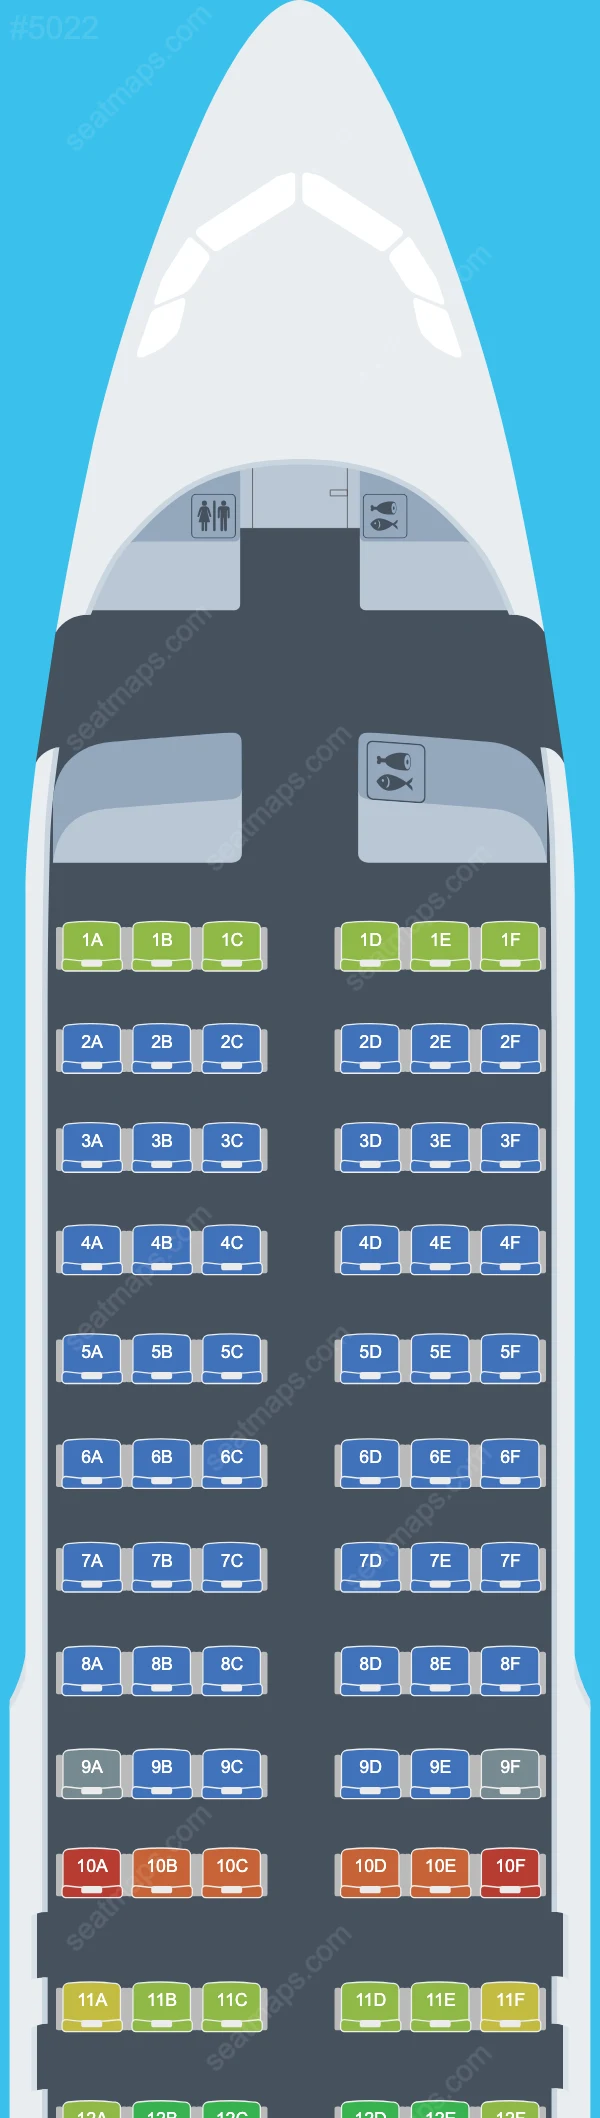 Air Malta Airbus A320 Seat Maps A320-200 V.1